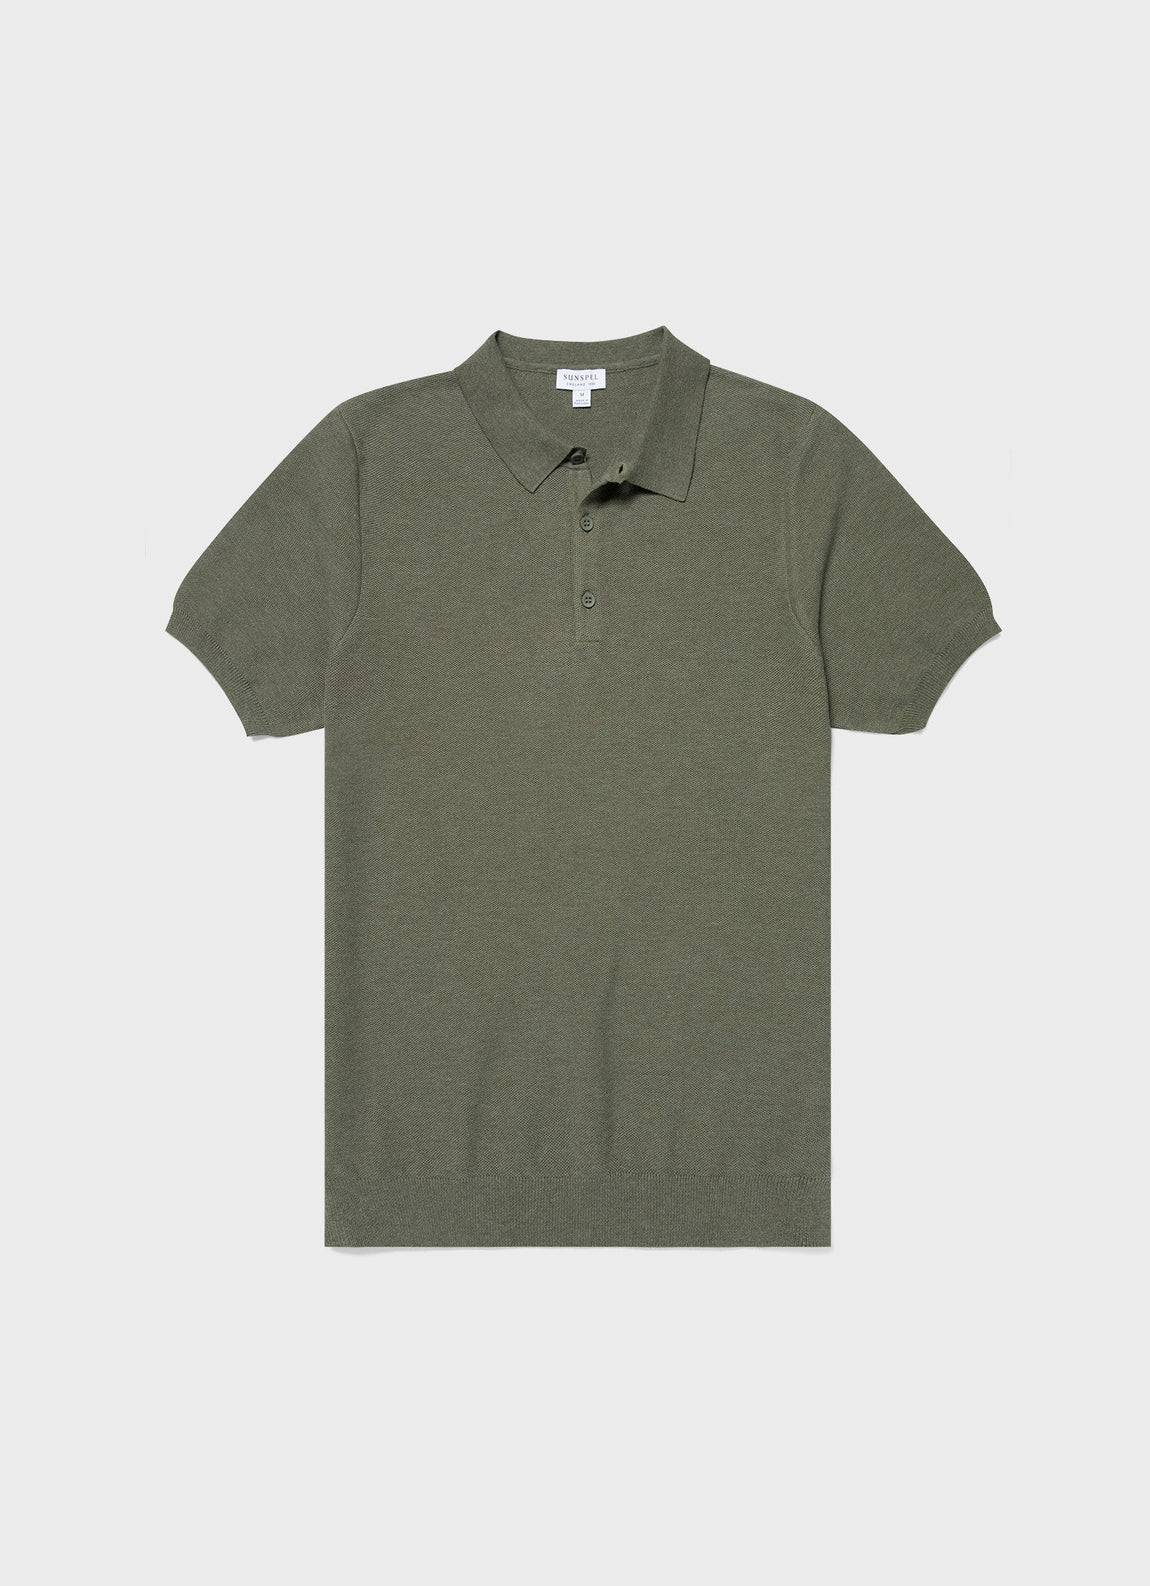 Men's Knit Polo Shirt in Pale Khaki Melange | Sunspel